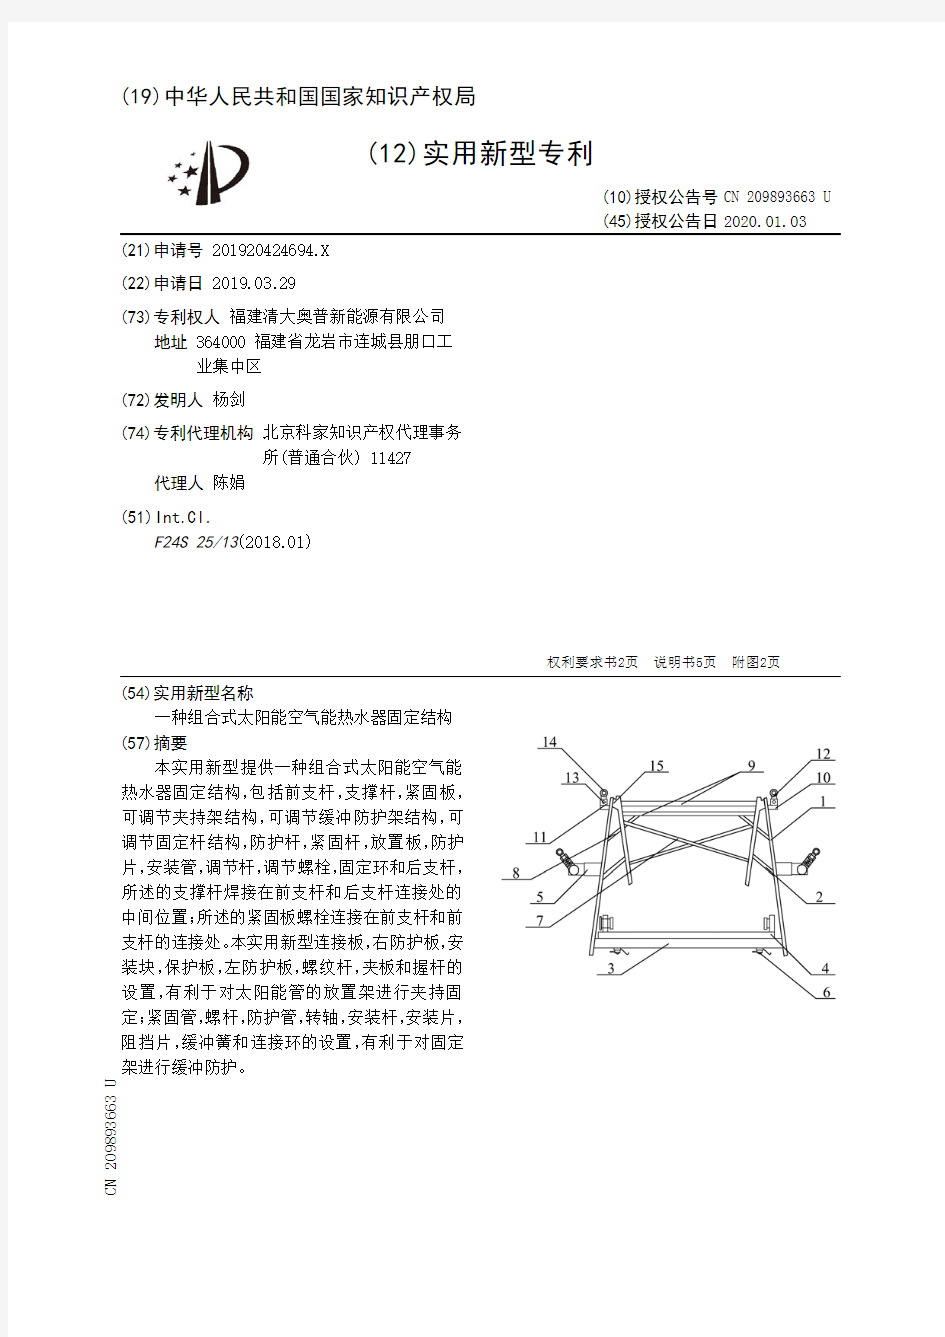 【CN209893663U】一种组合式太阳能空气能热水器固定结构【专利】